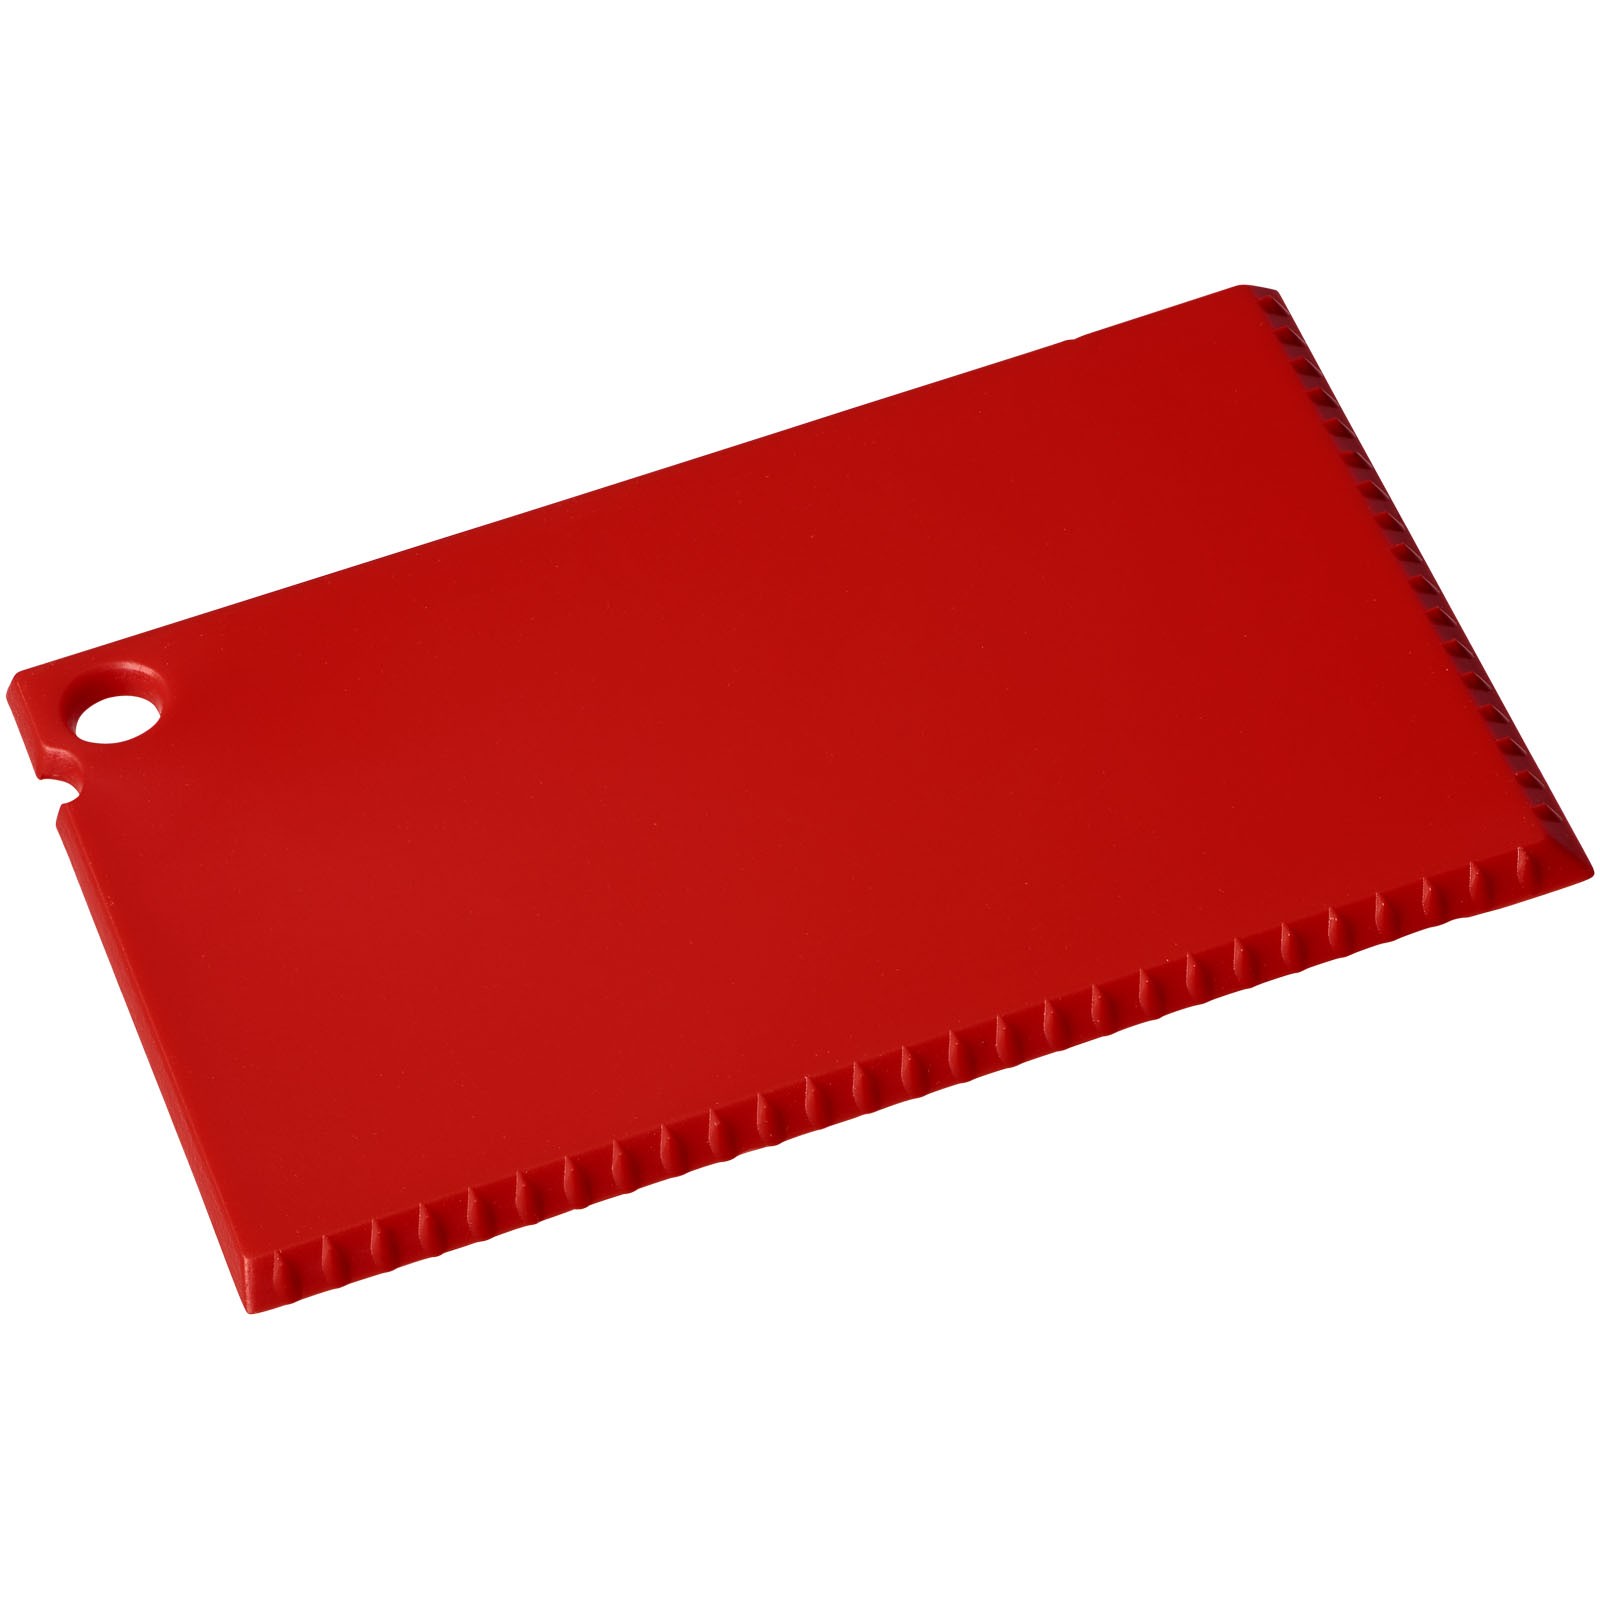 Coro credit card sized ice scraper - Red